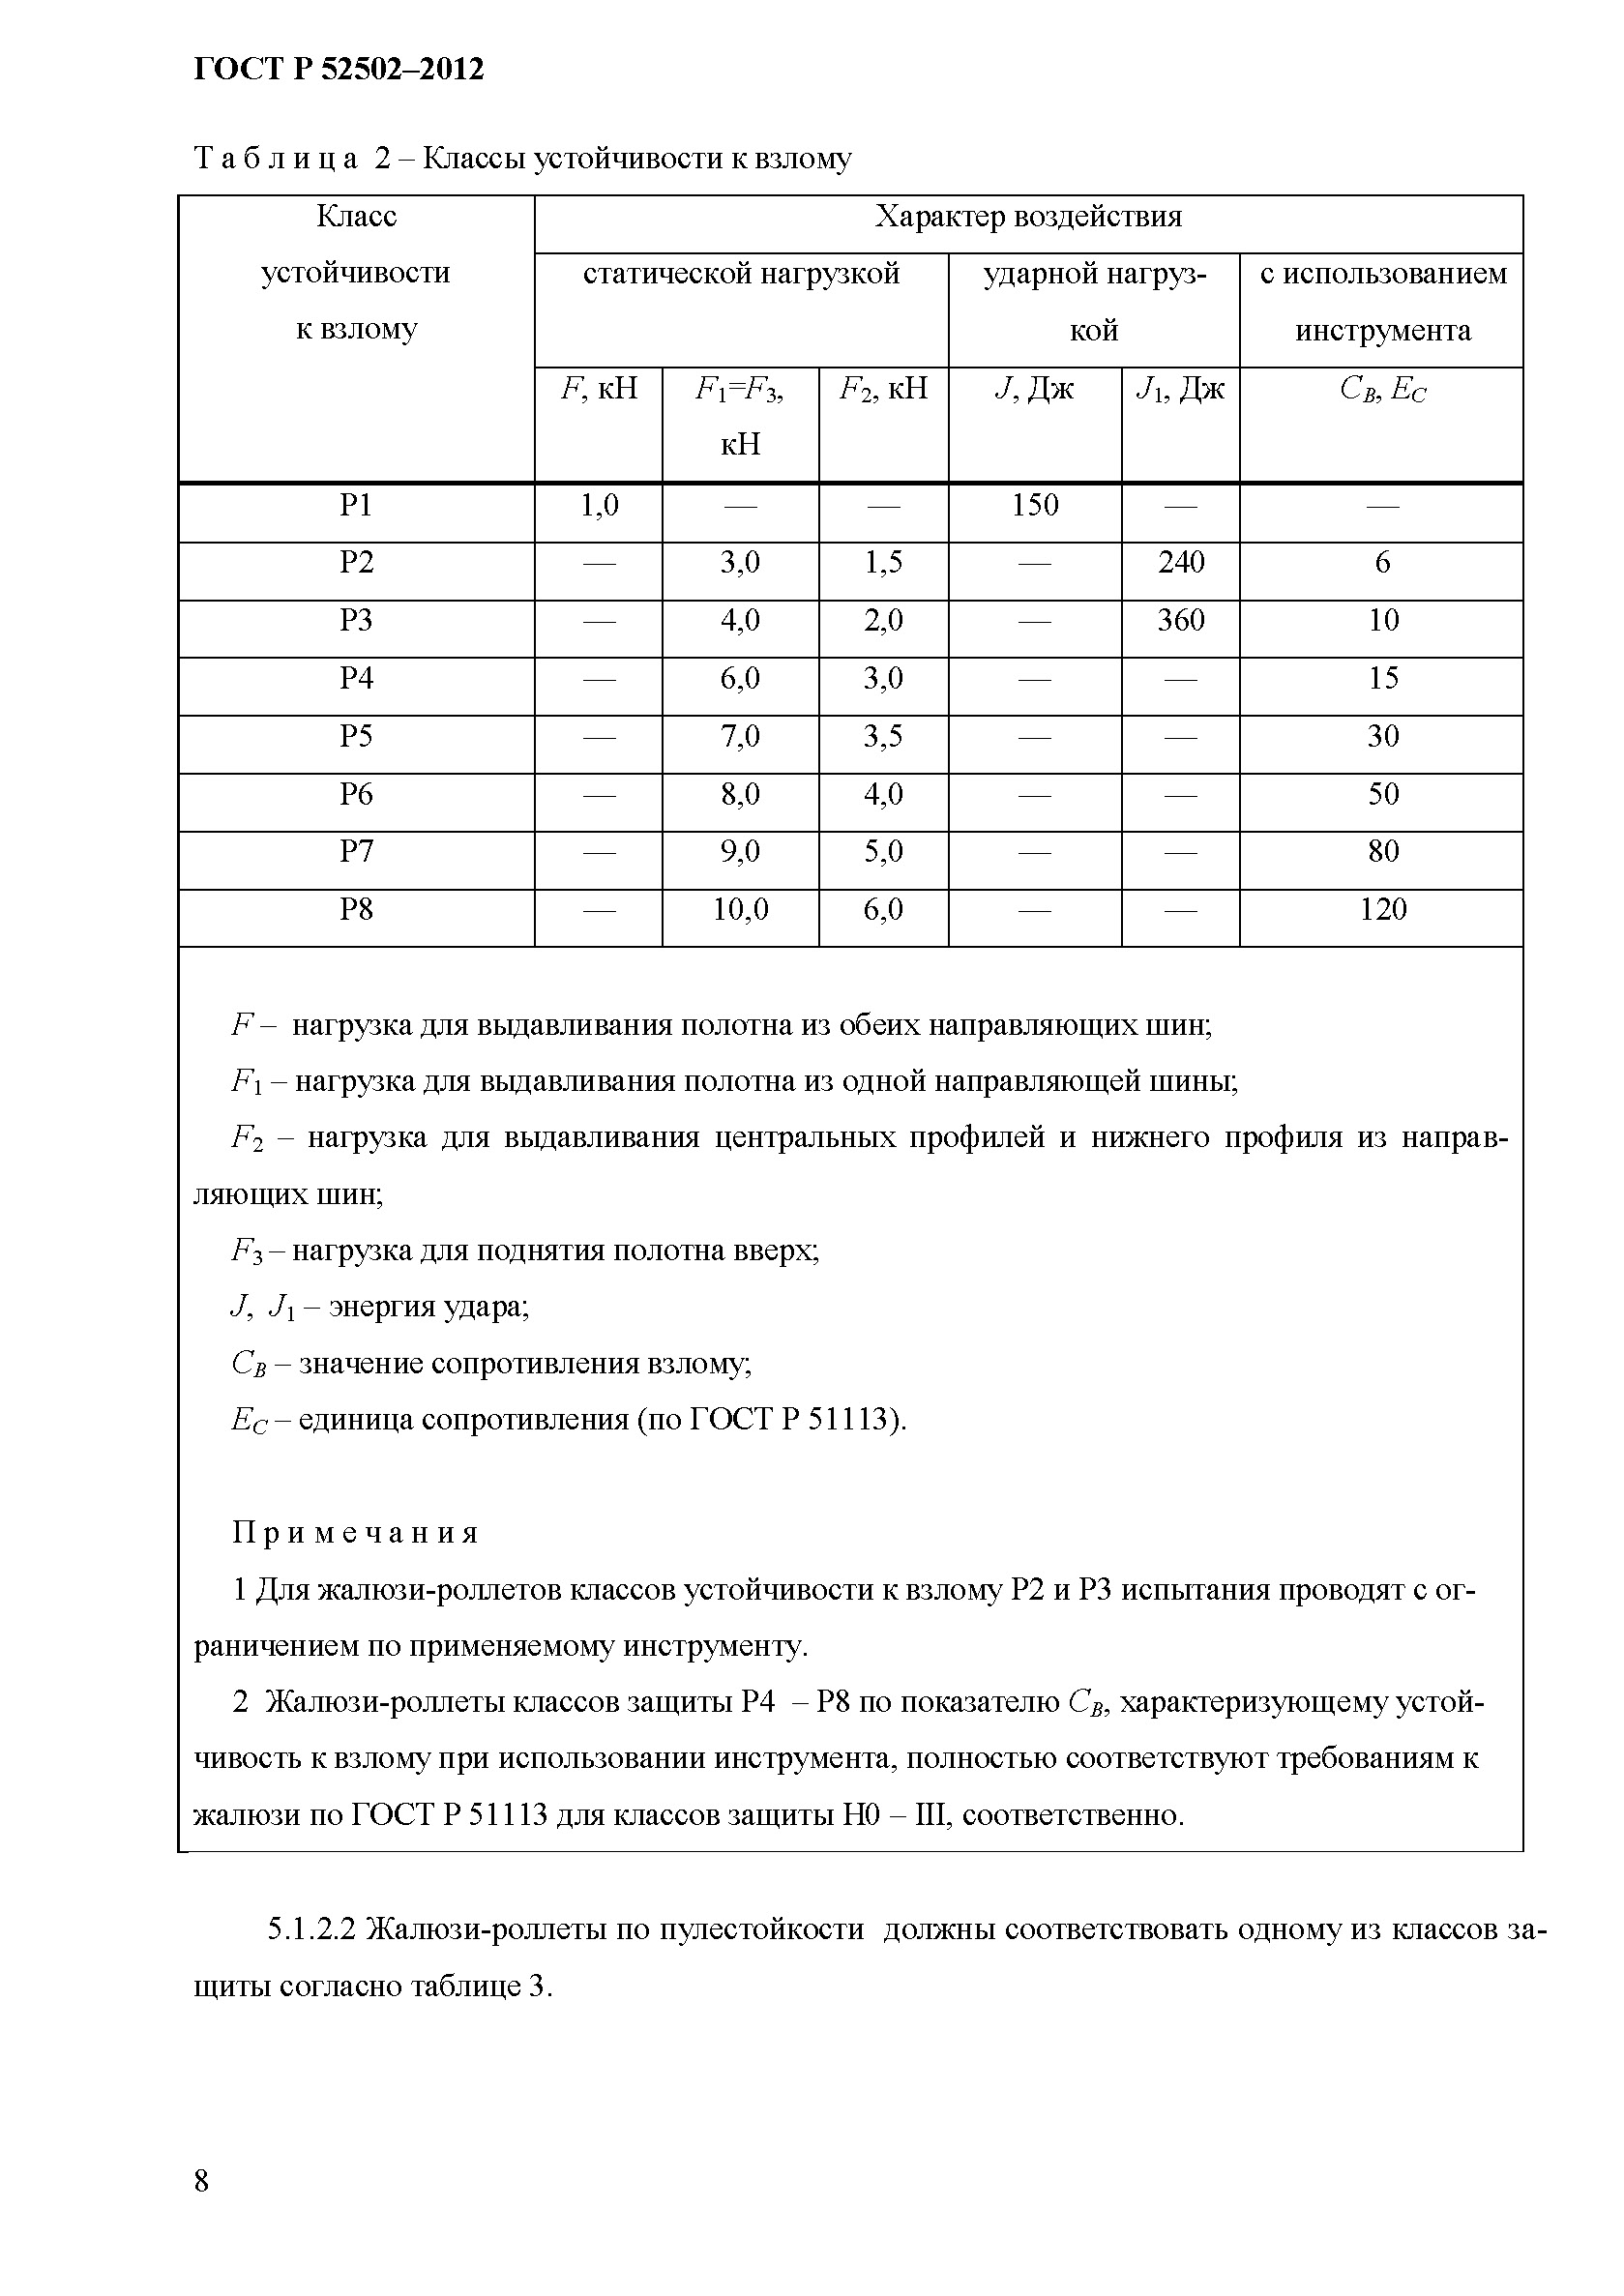 ГОСТ Р 52502 – 2012 Жалюзи-Роллеты металлические